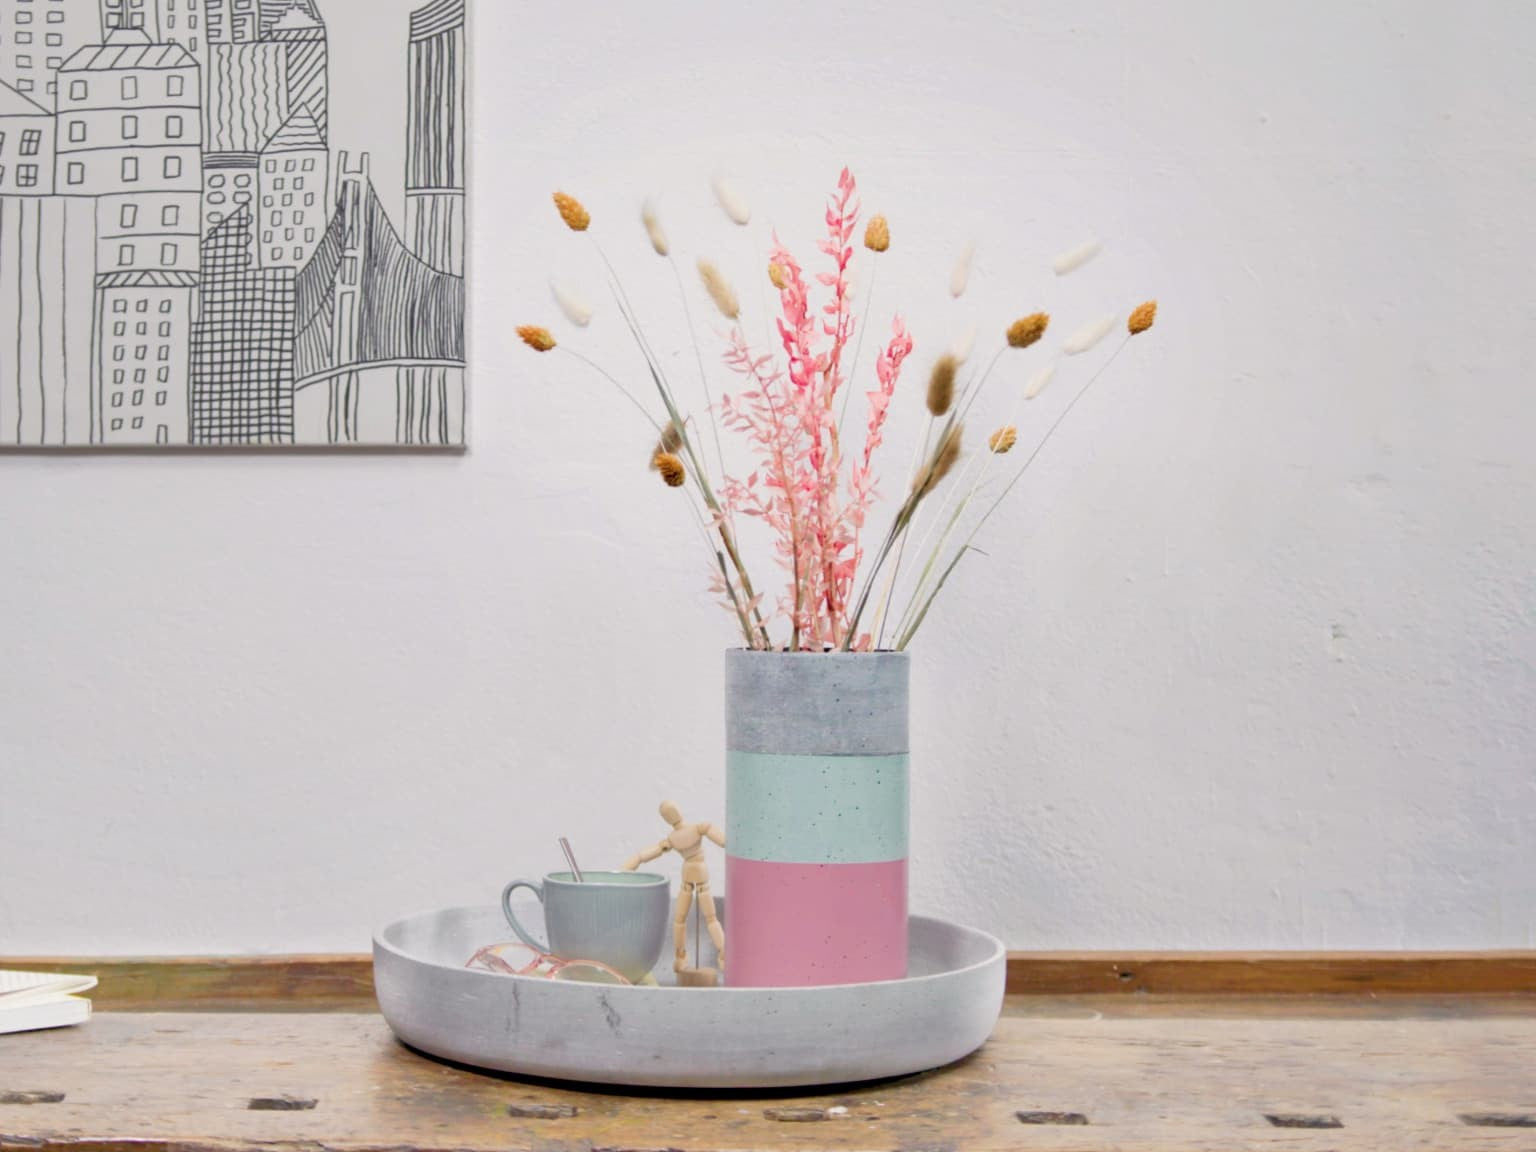 Eine moderne Vase aus edding 5200 Permanentspray Acryllack Pastell & sanfte Farben mit einer Auswahl getrockneter Blumen steht auf einem grauen Tablett neben einer Tasse Kaffee, vor dem Hintergrund einer einfachen Strichzeichnung an der Wand.